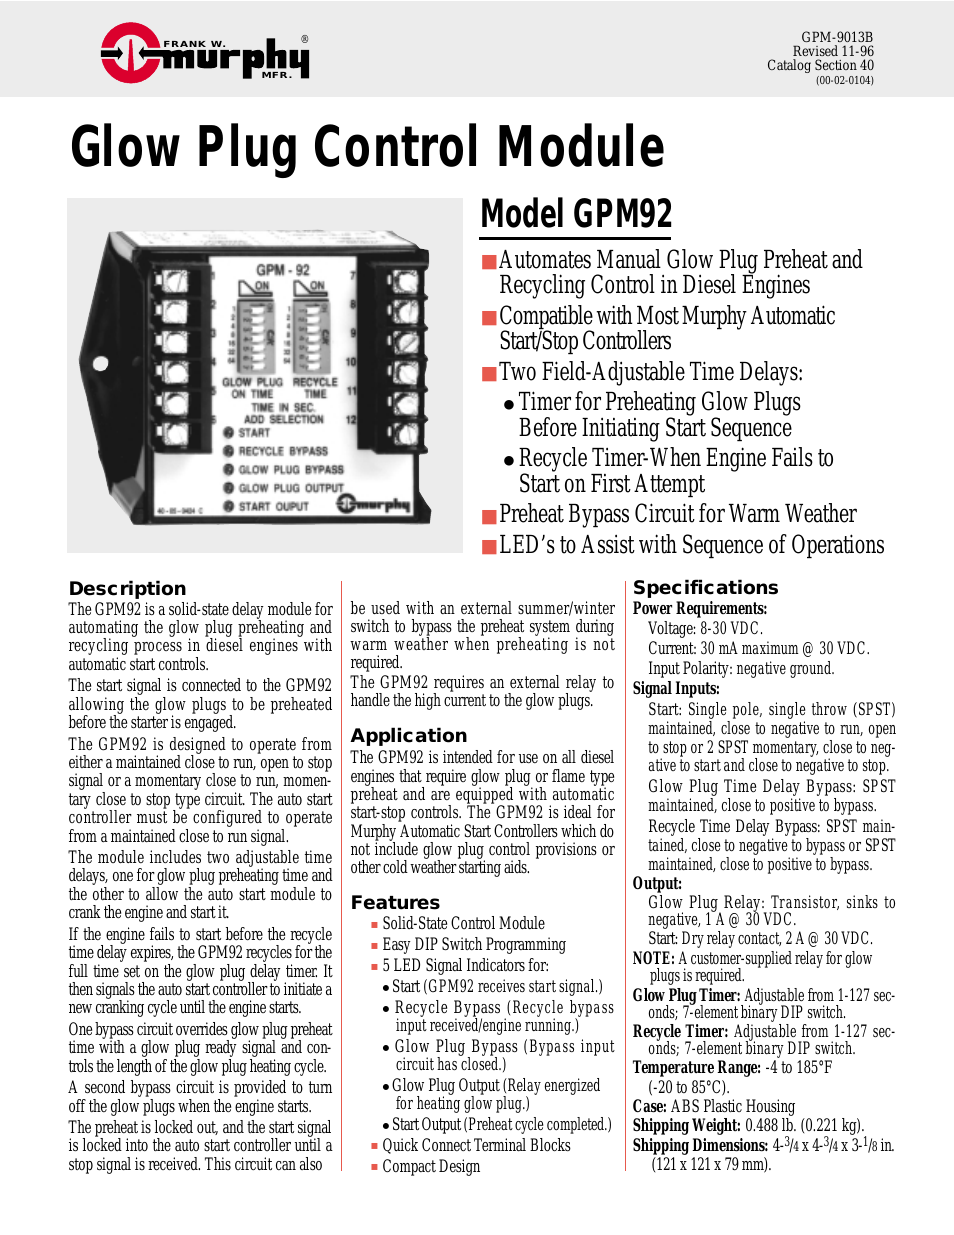 Glow Plug Control Module GPM92